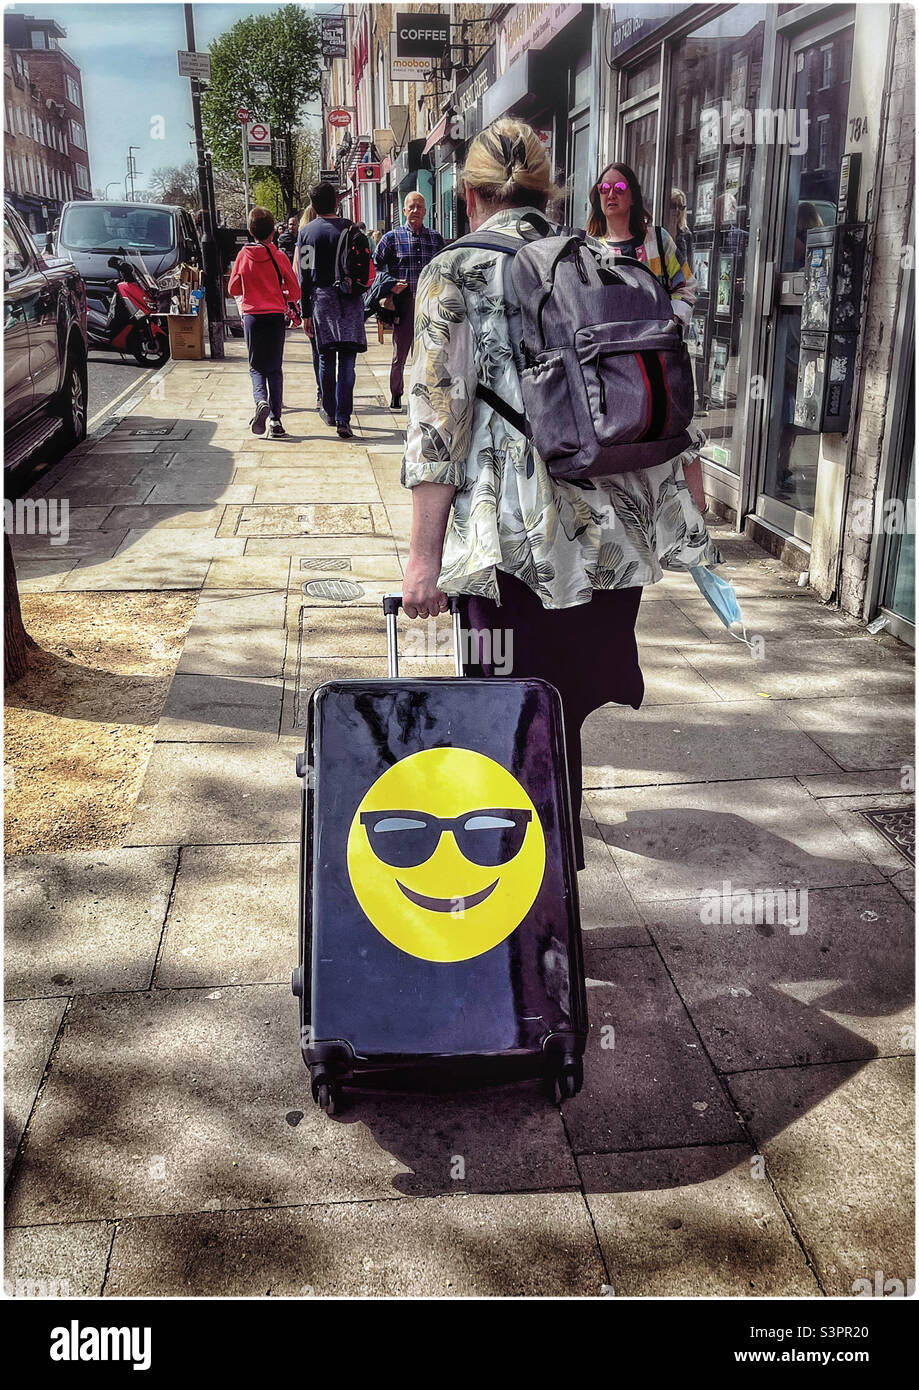 Eine Frau zieht einen mit einem Smiley-Emoji geprägten Koffer entlang einer  Londoner Straße Stockfotografie - Alamy